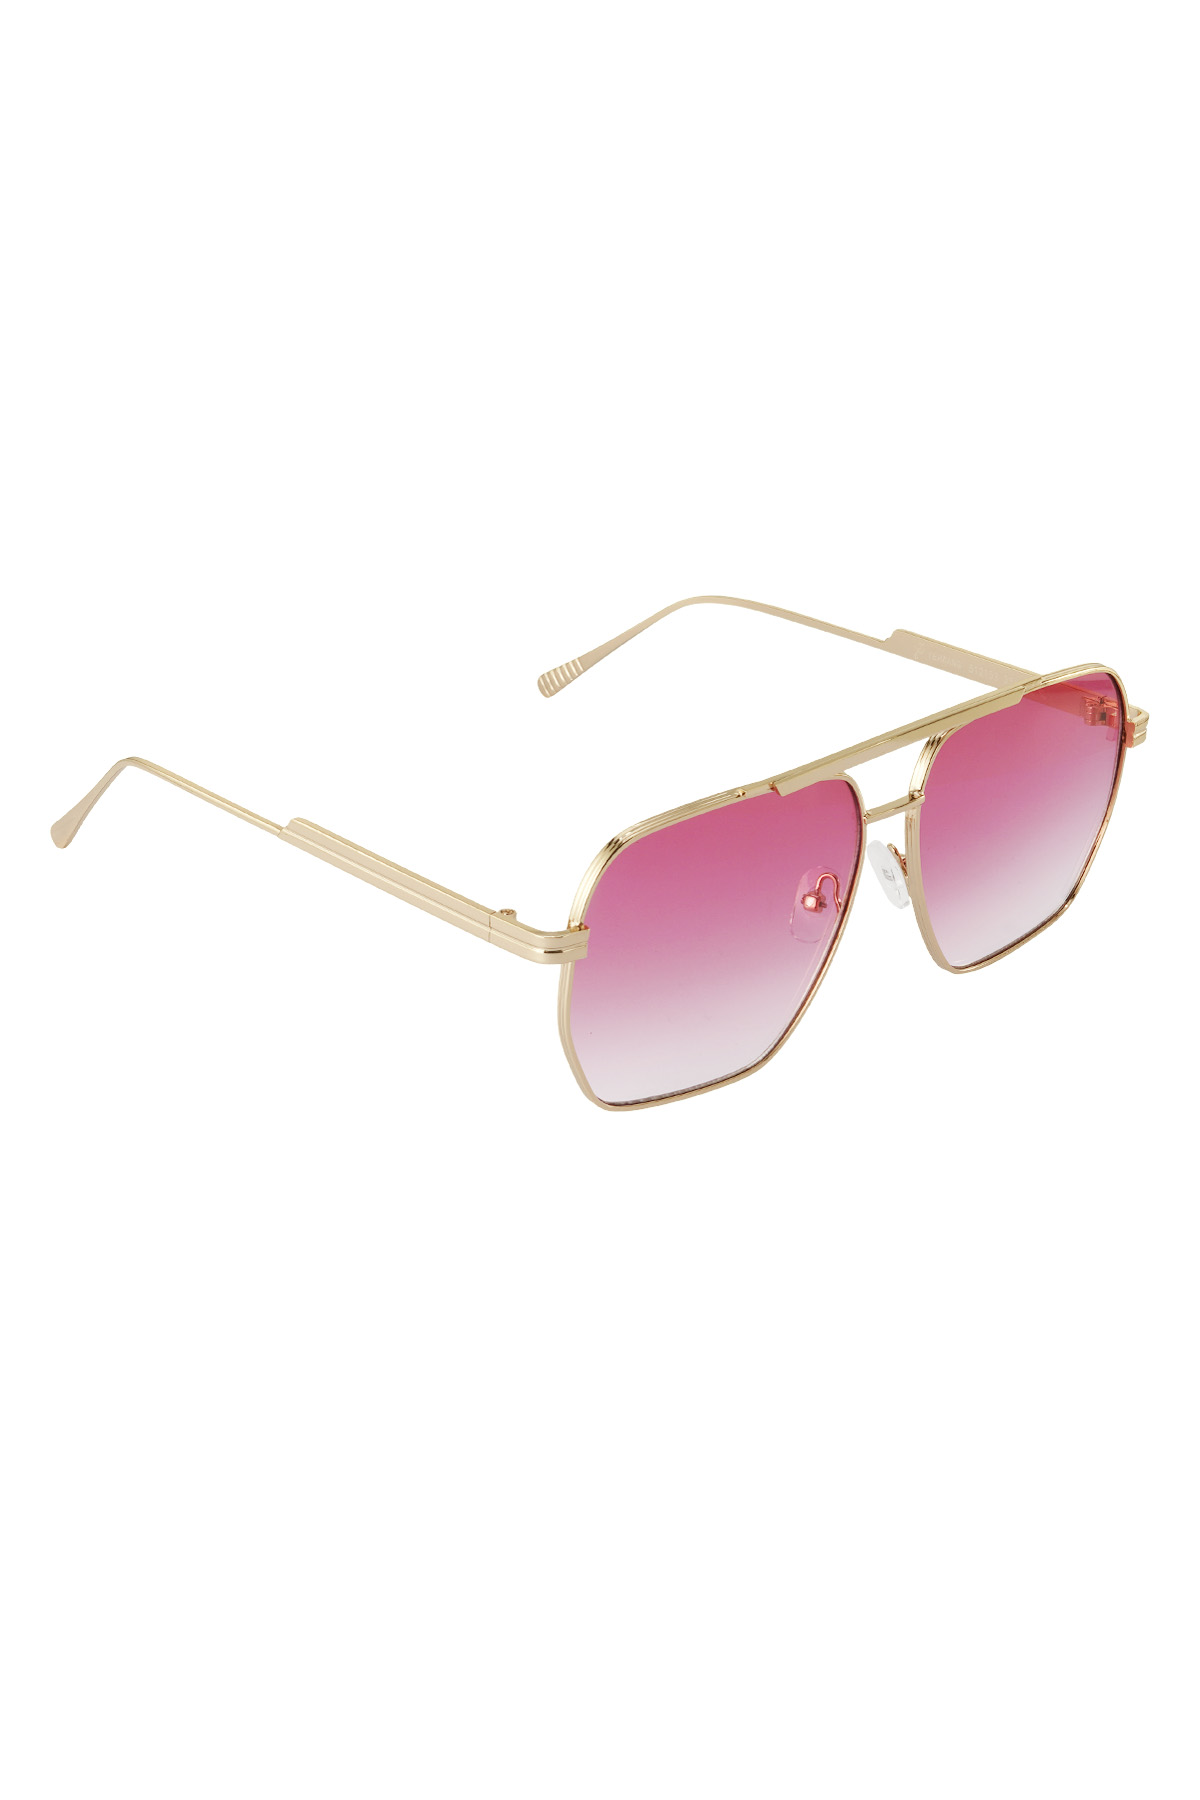 Sommersonnenbrille aus Metall – Rosa und Gold